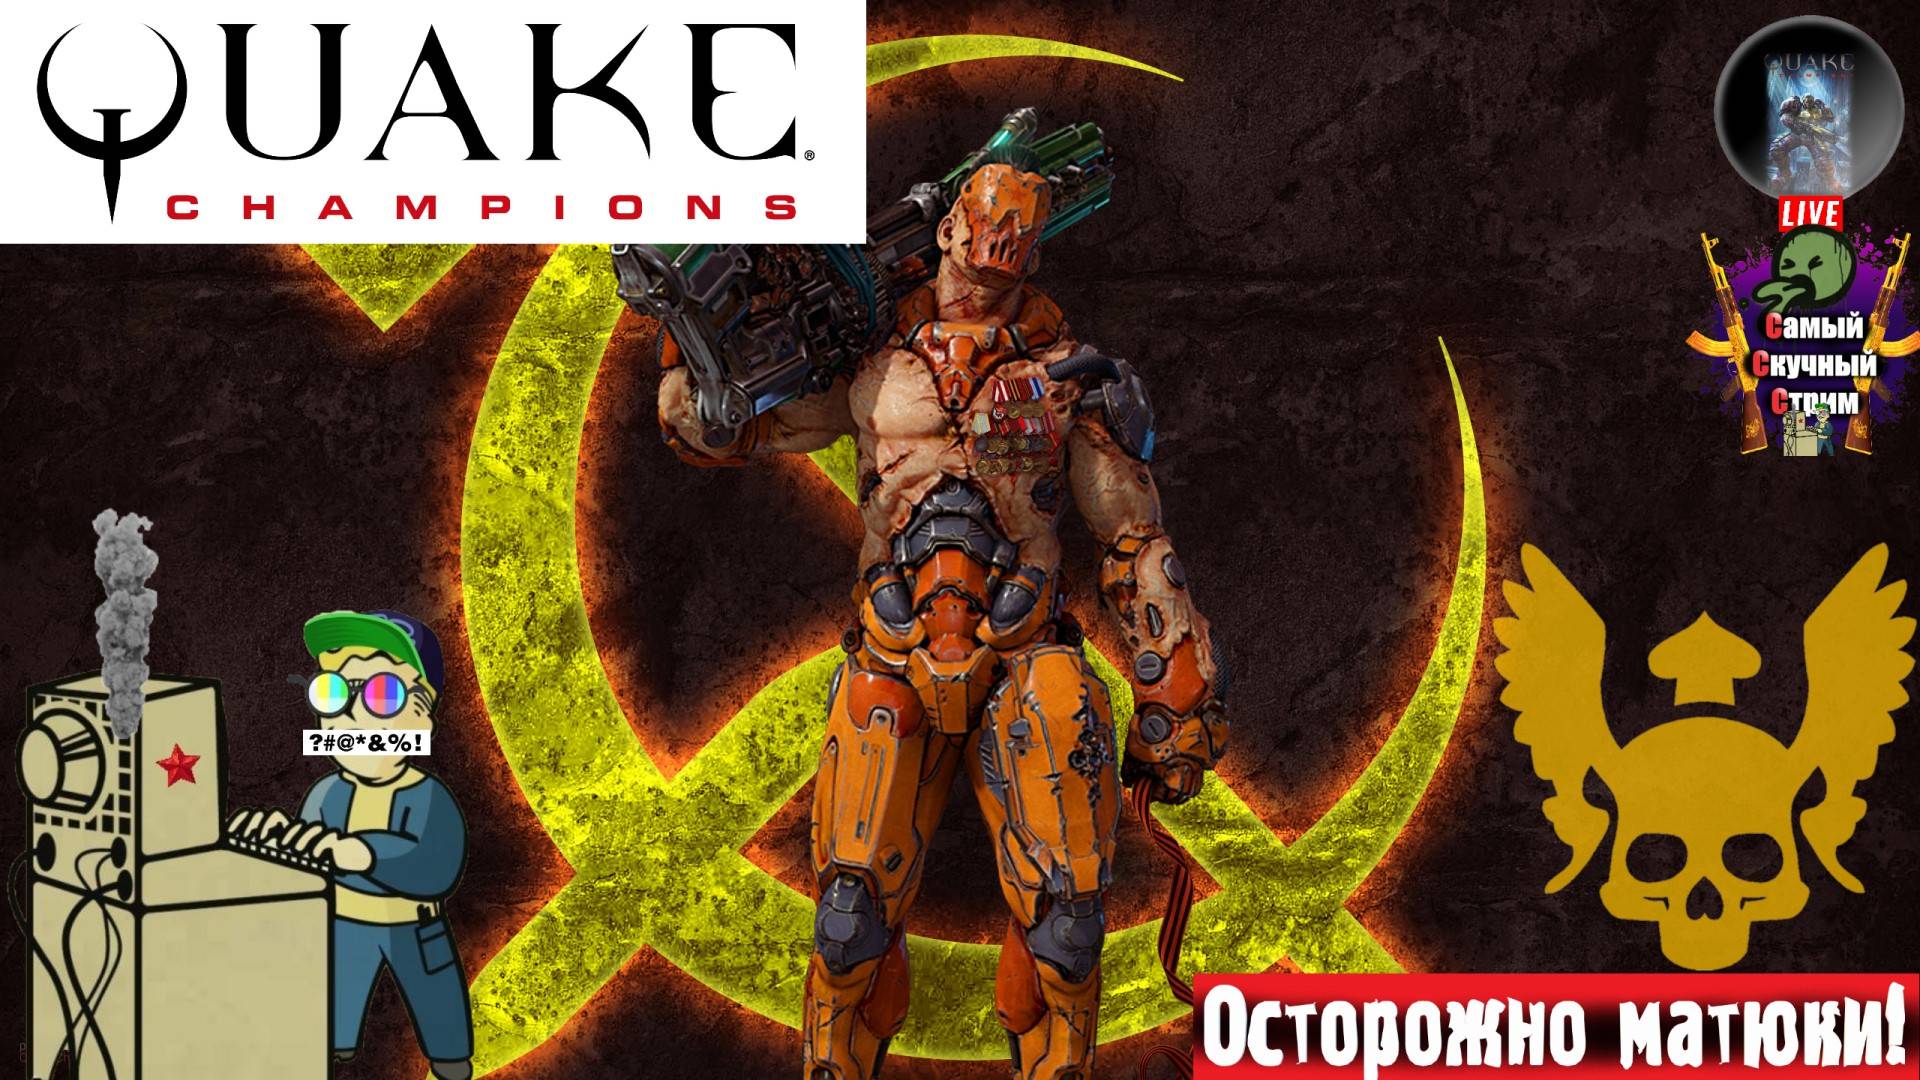 Quake Champions | Квейк Чампионс Квага | Мгновенка  #quake #стрим #квейк